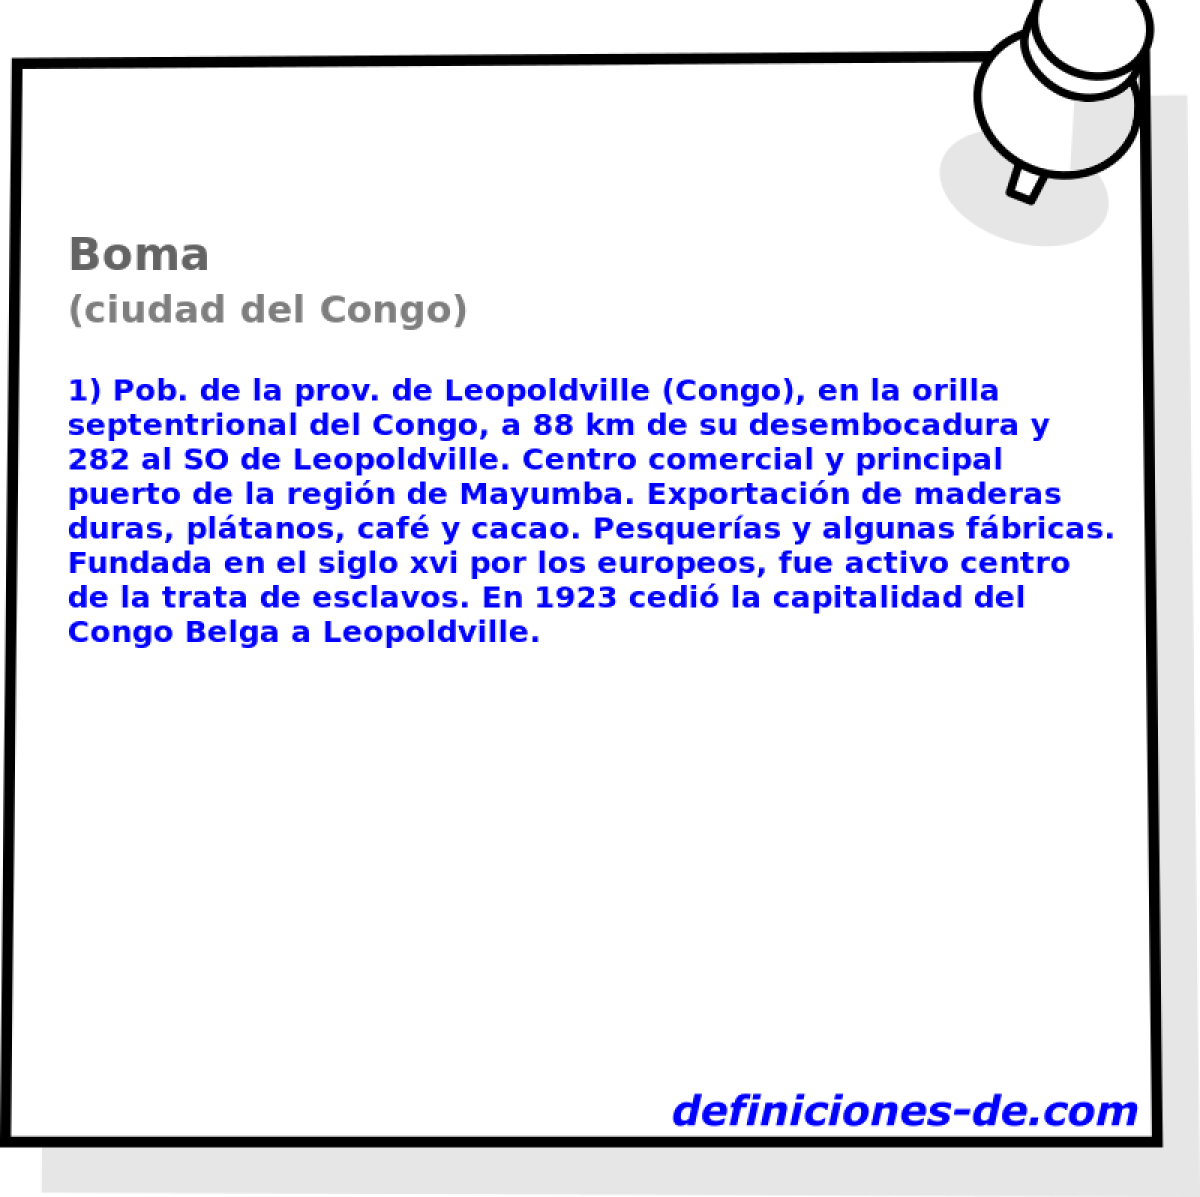 Boma (ciudad del Congo)